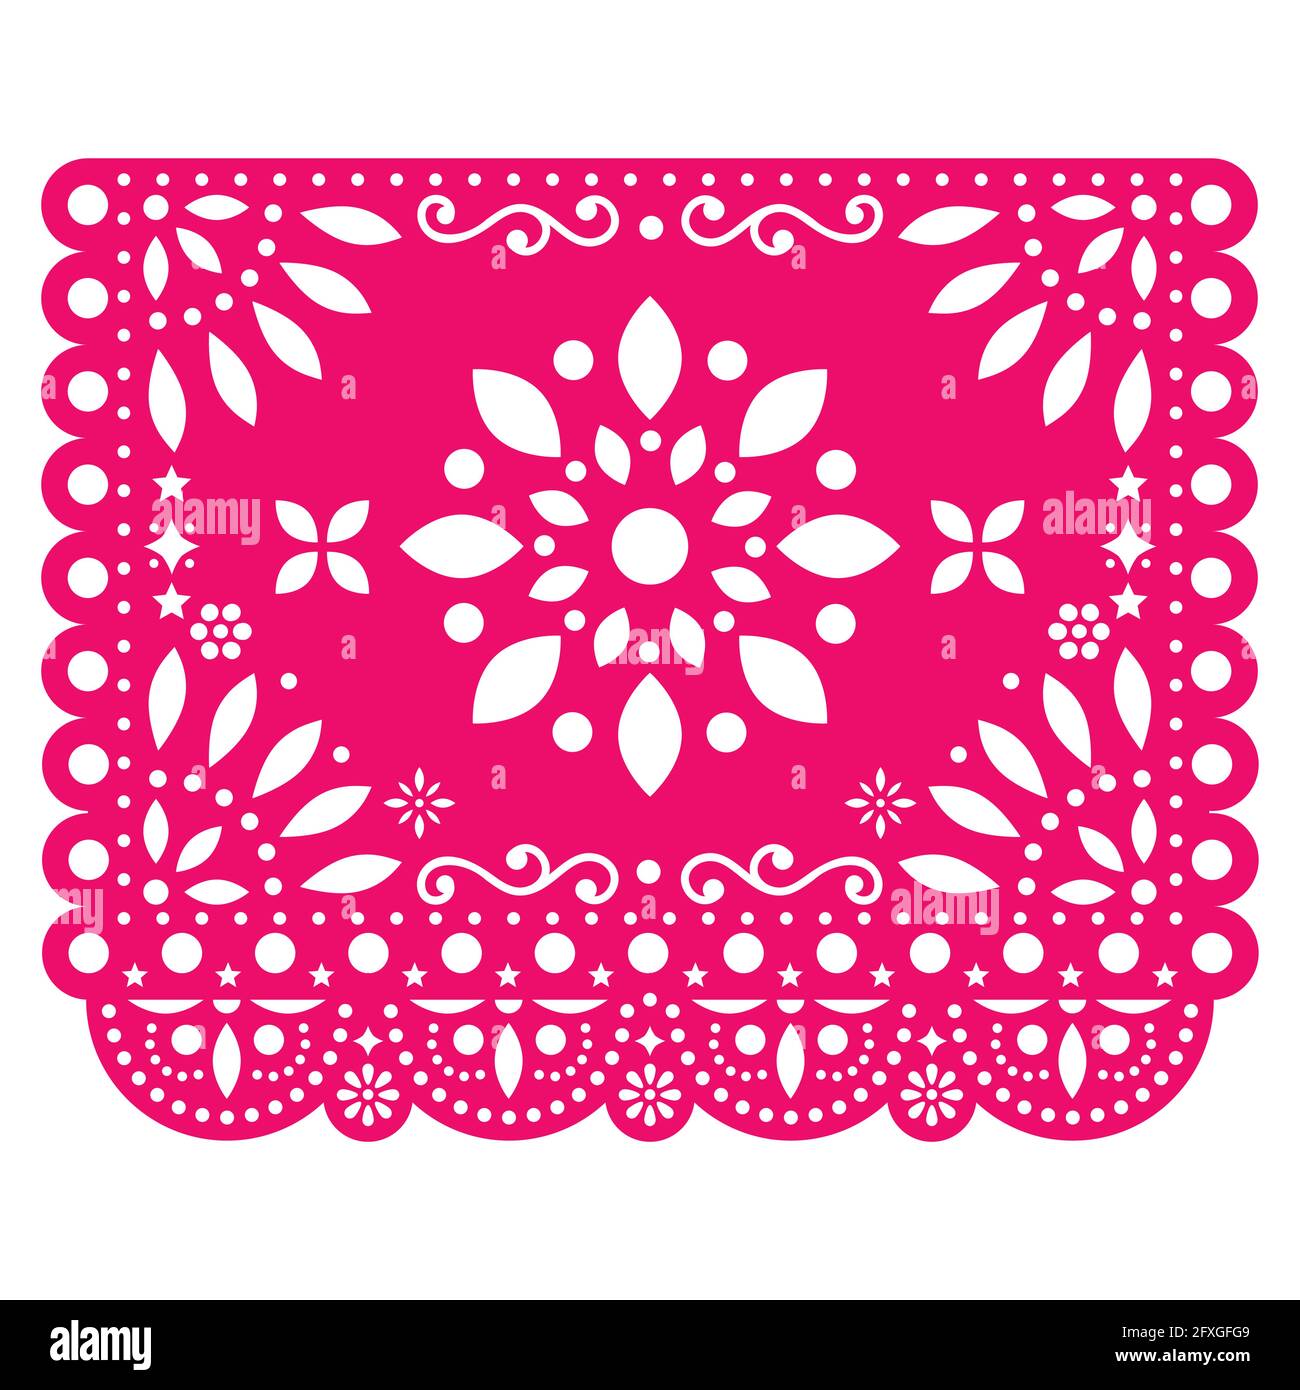 Papel Picado Vektor-Design mit Blume in rosa mexikanischem Papier Dekoration mit Blumen und geometrischen Formen Stock Vektor